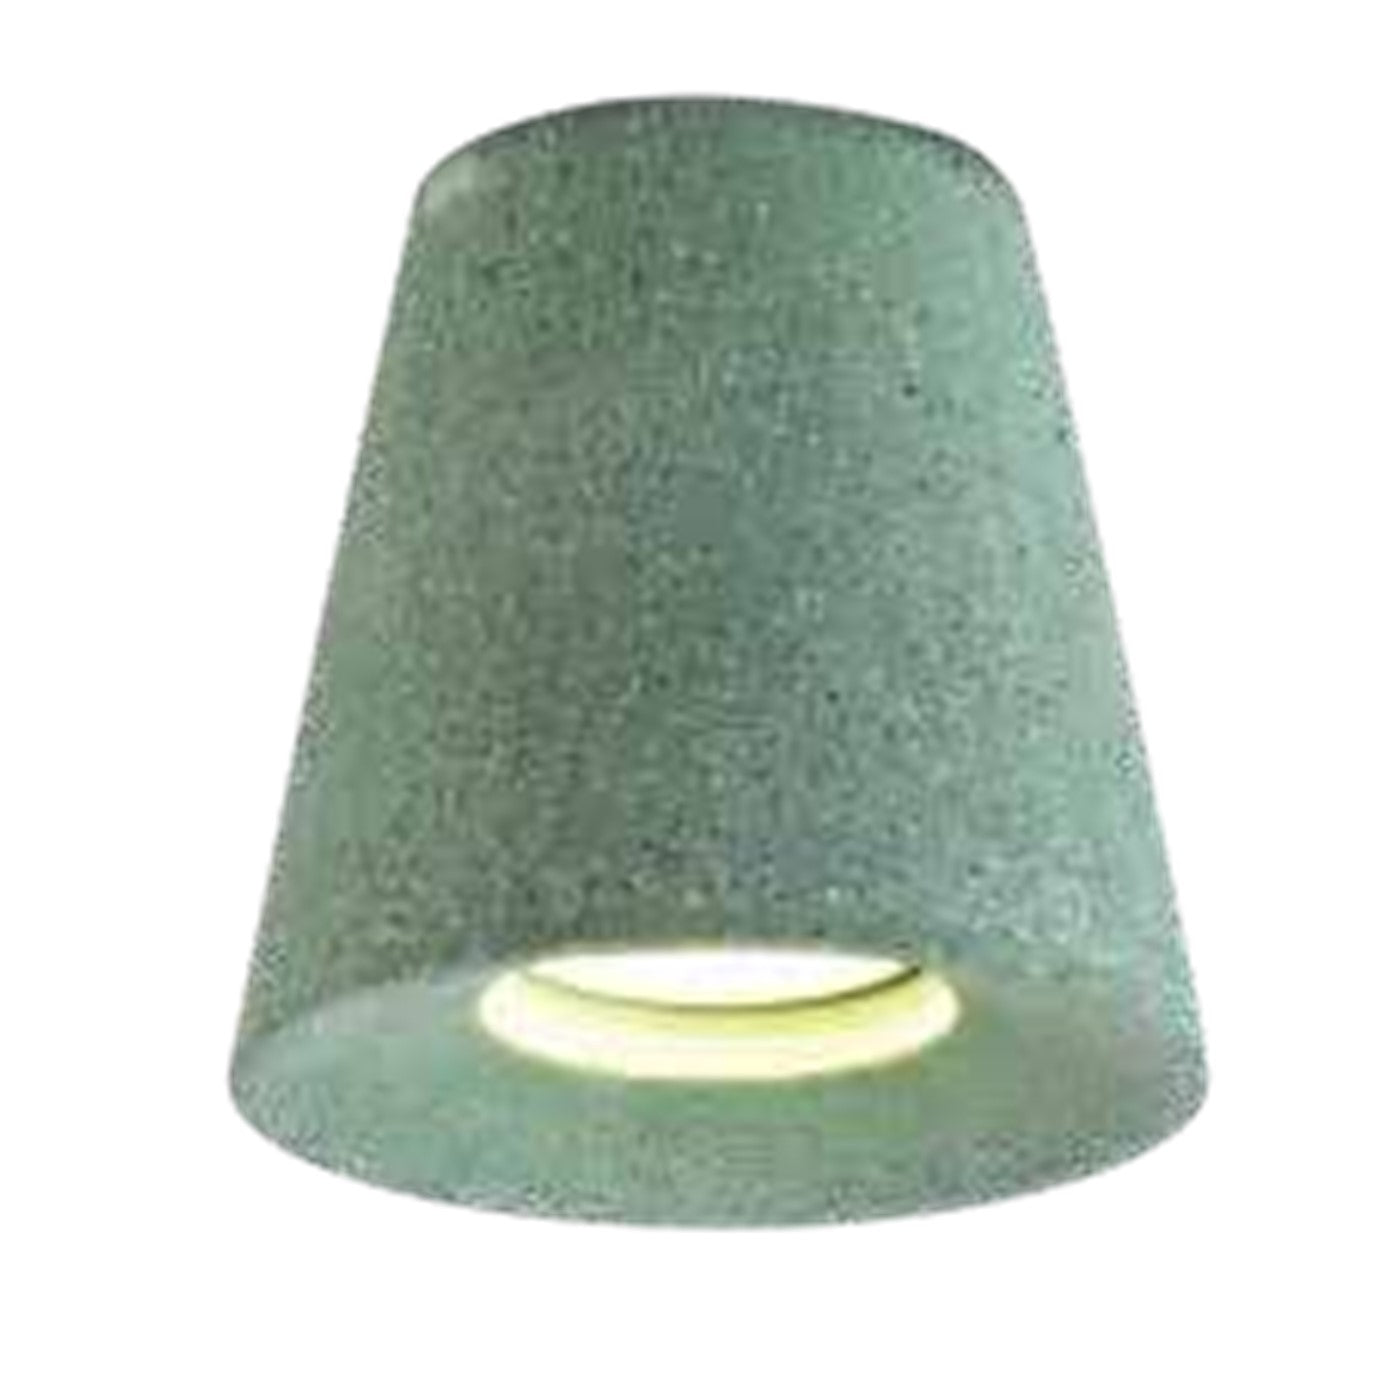 BO-03-004-Green Concrete Ceiling Light